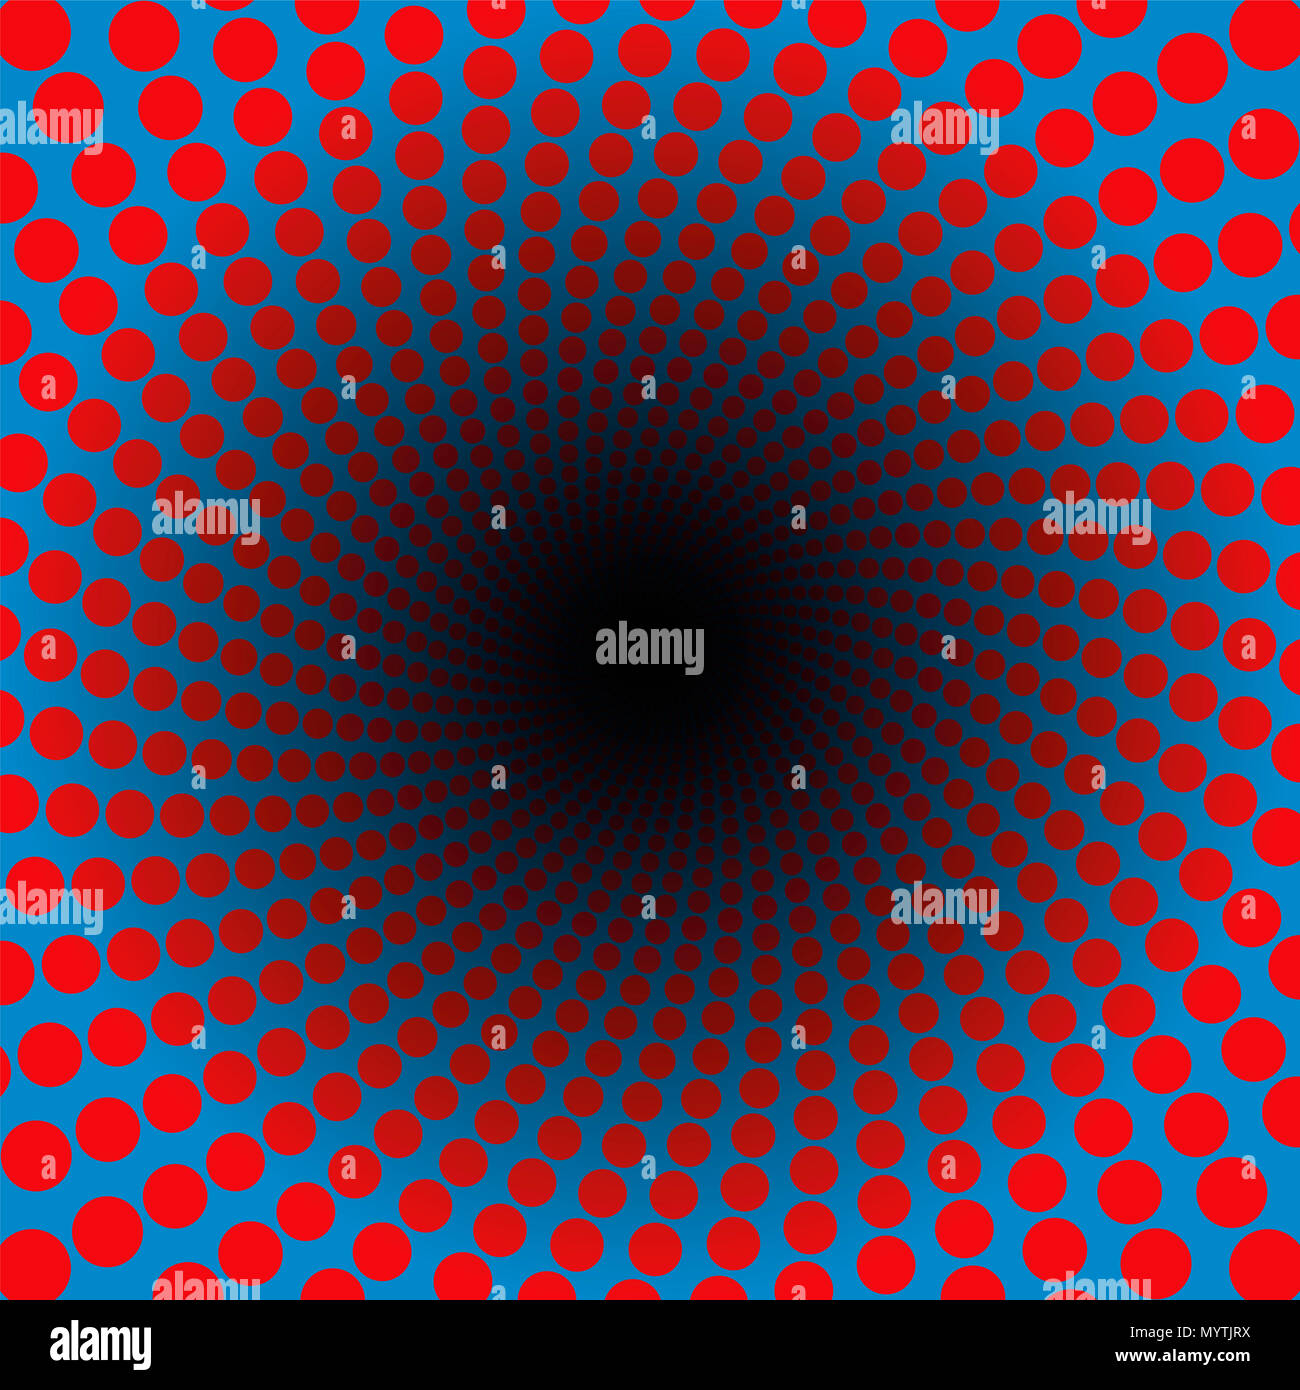 Spiralförmige Muster der roten Punkte in einem blauen Tunnel mit schwarzem Zentrum-hypnotischen, lebendige, Psychedelic, reibt, pulsierende - twisted Rundschreiben Fraktal. Stockfoto